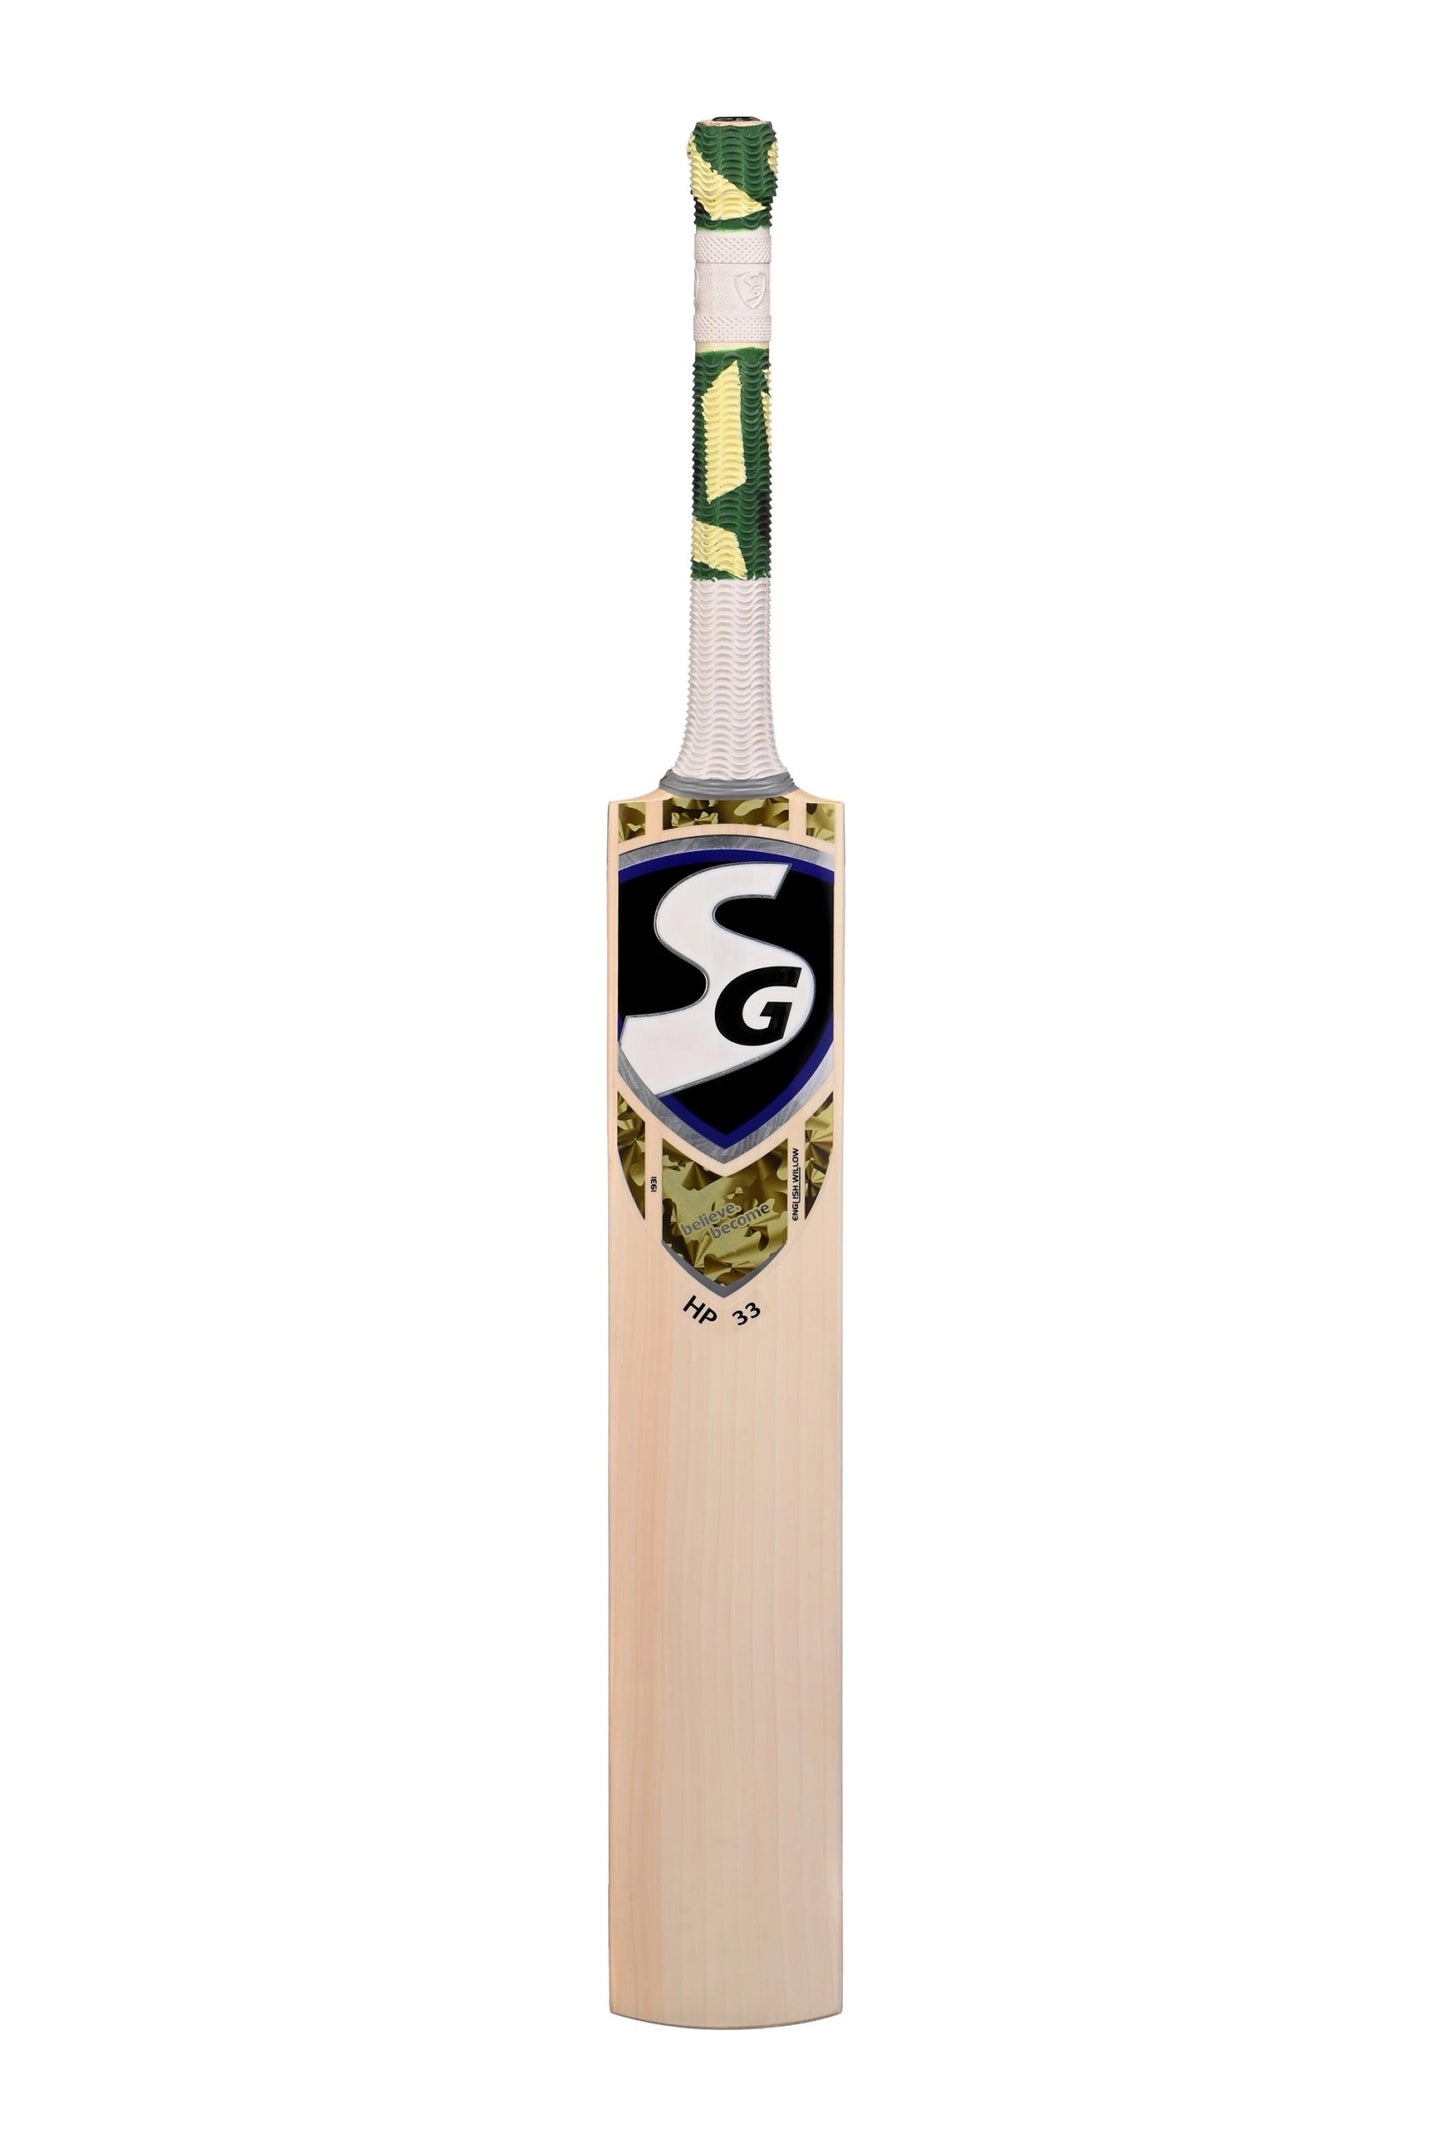 Cricket Bat SG HP 33(No Discount)